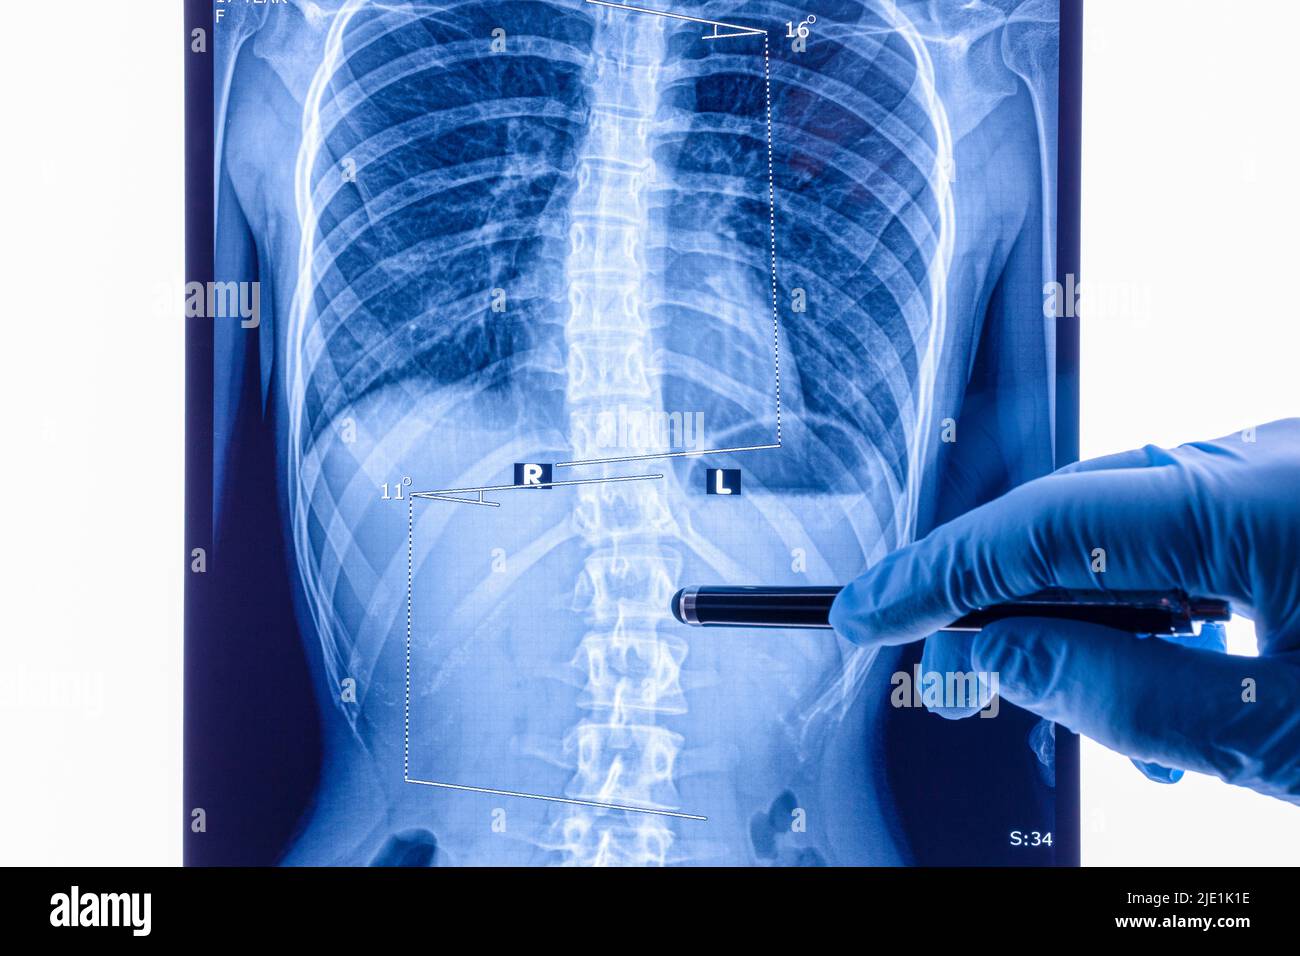 Il medico analizza i raggi X della colonna vertebrale che mostrano scoliosi nell'area lombare. La scoliosi è una curvatura laterale anomala della colonna vertebrale. Foto Stock